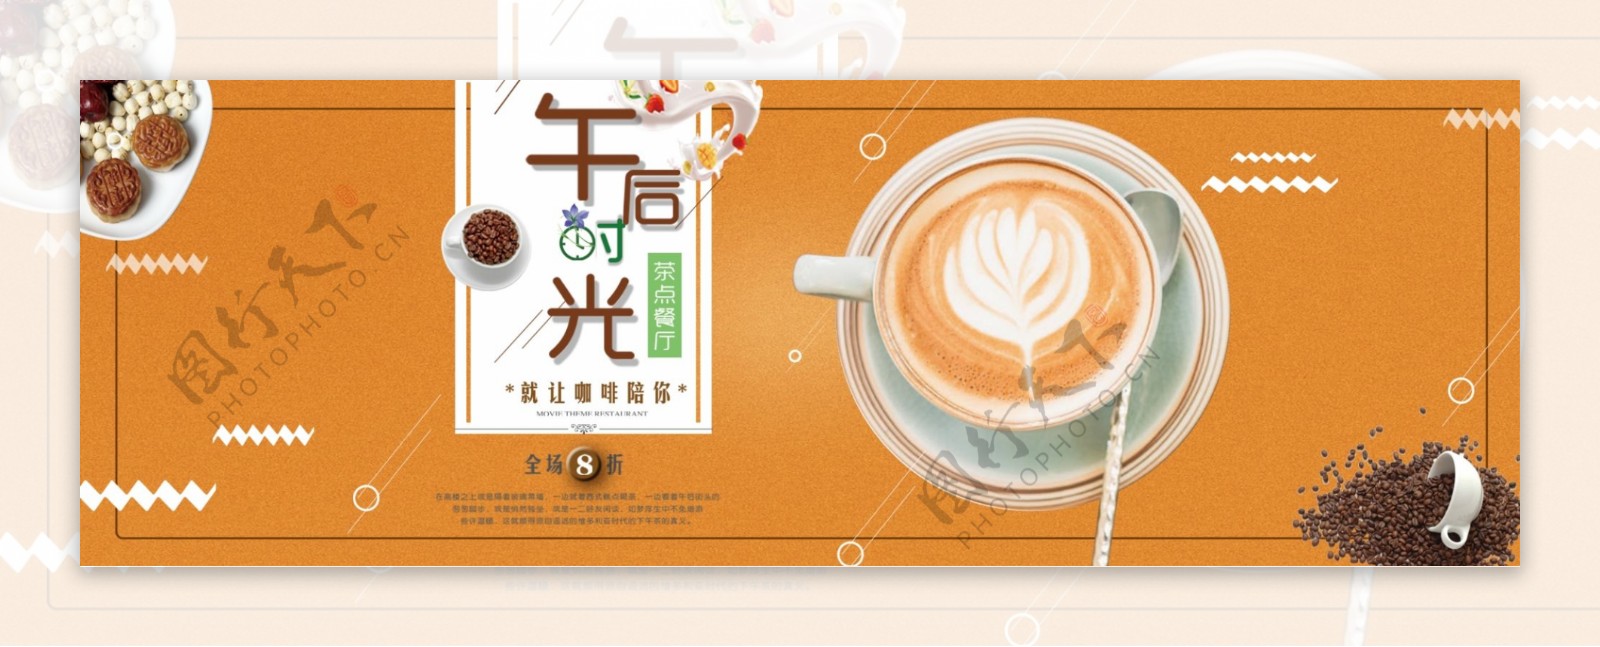 黄色纹理背景咖啡饮品促销电商海报